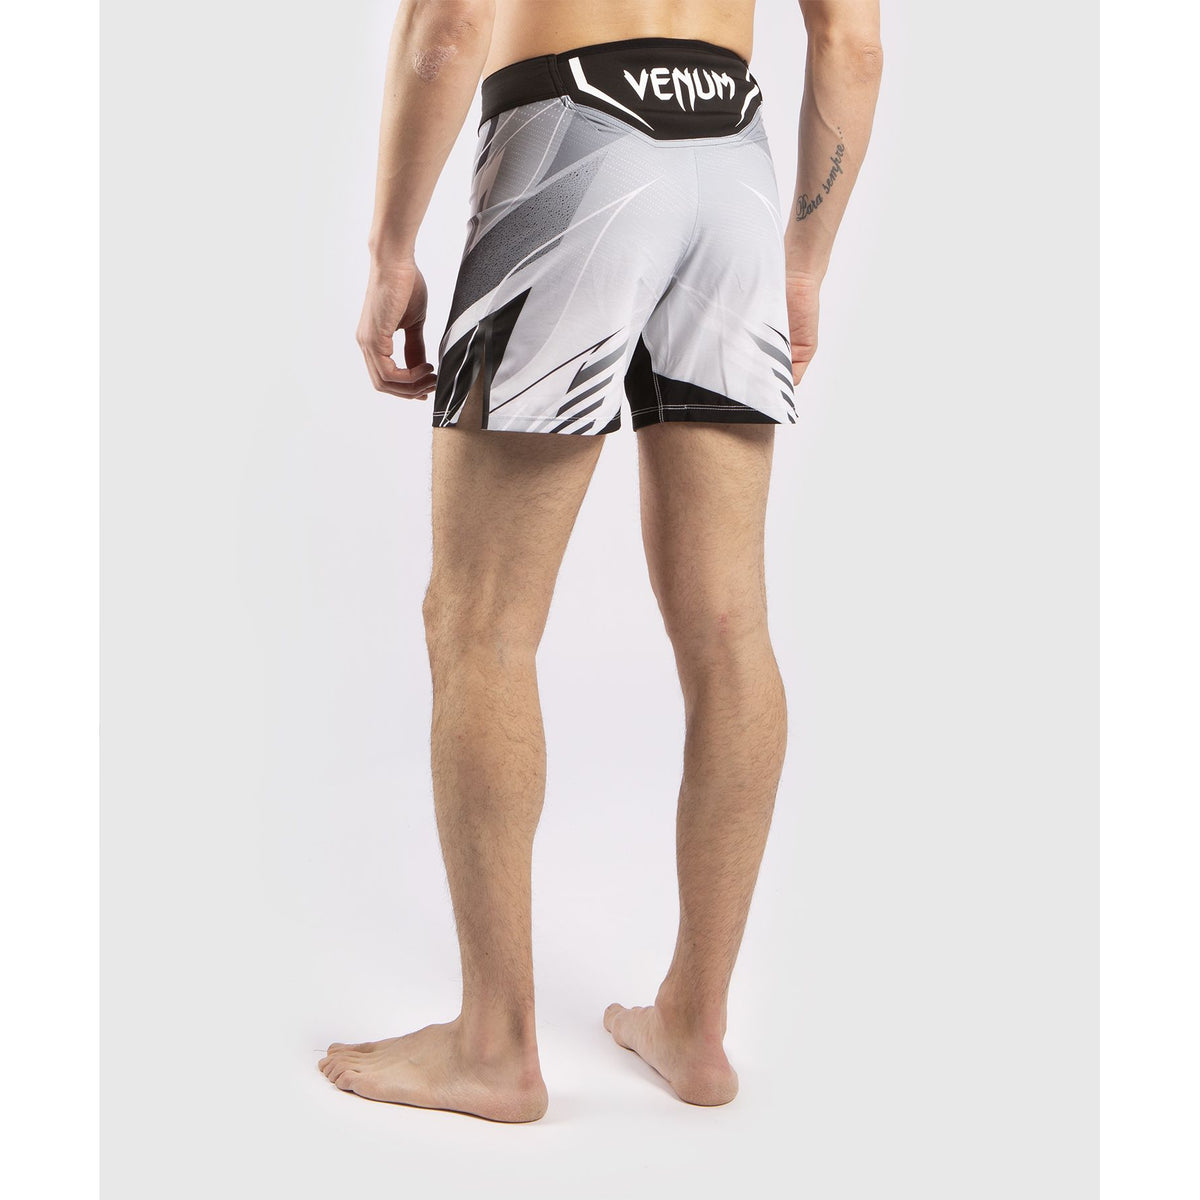 UFC Pro Line Men's Shorts - Venum